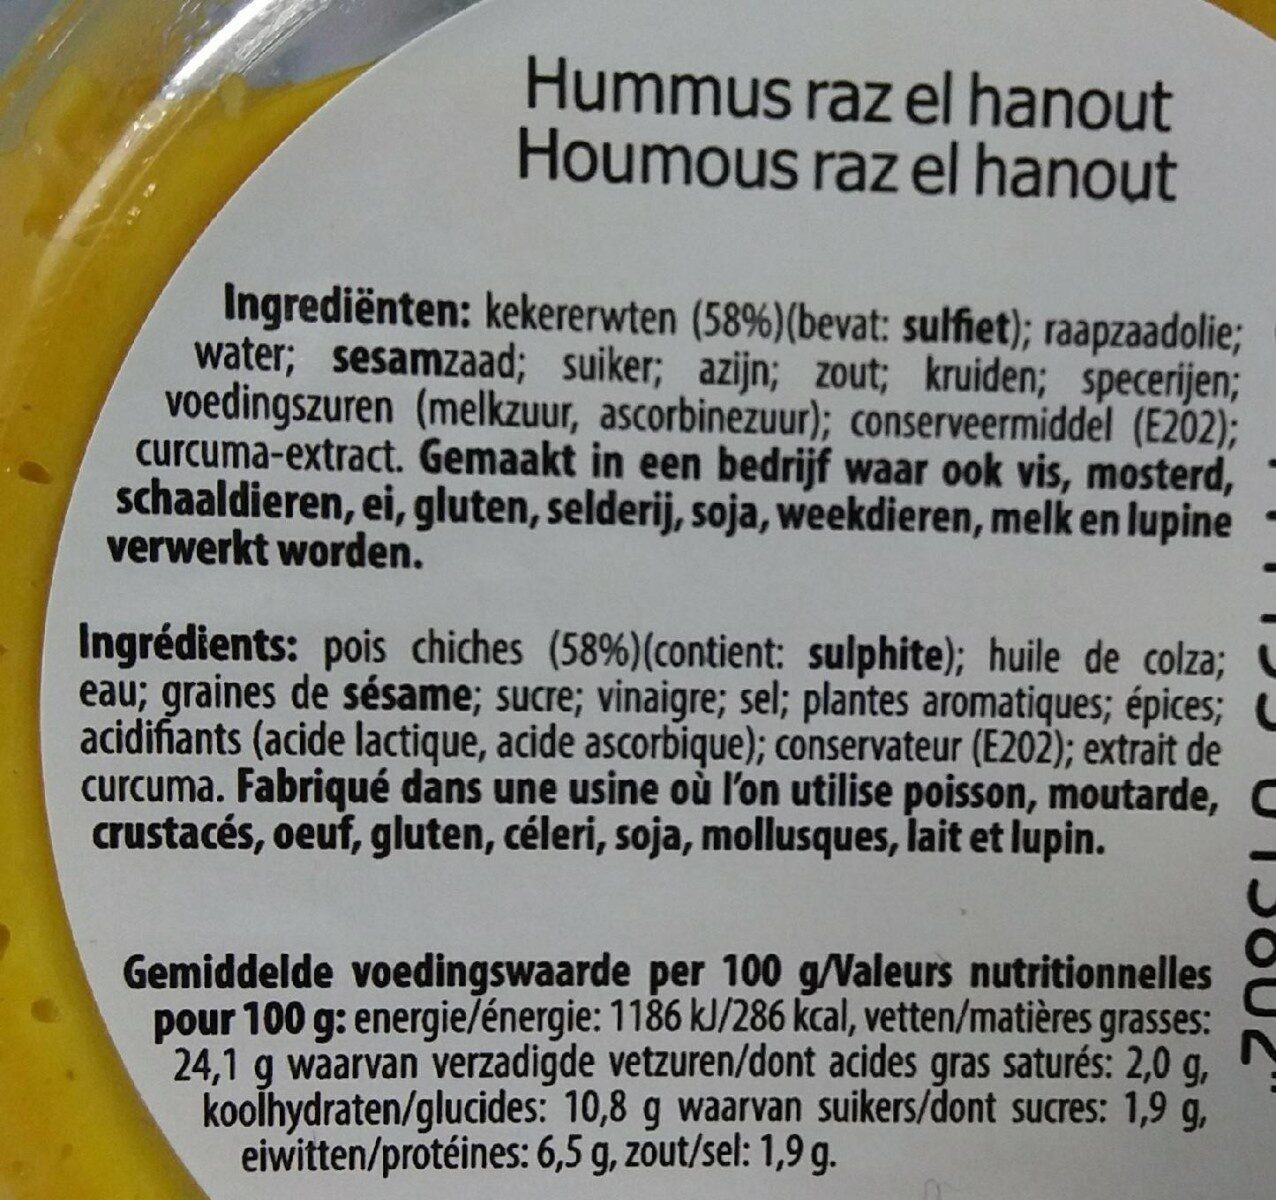 Houmous Raz El Hanout - Tableau nutritionnel